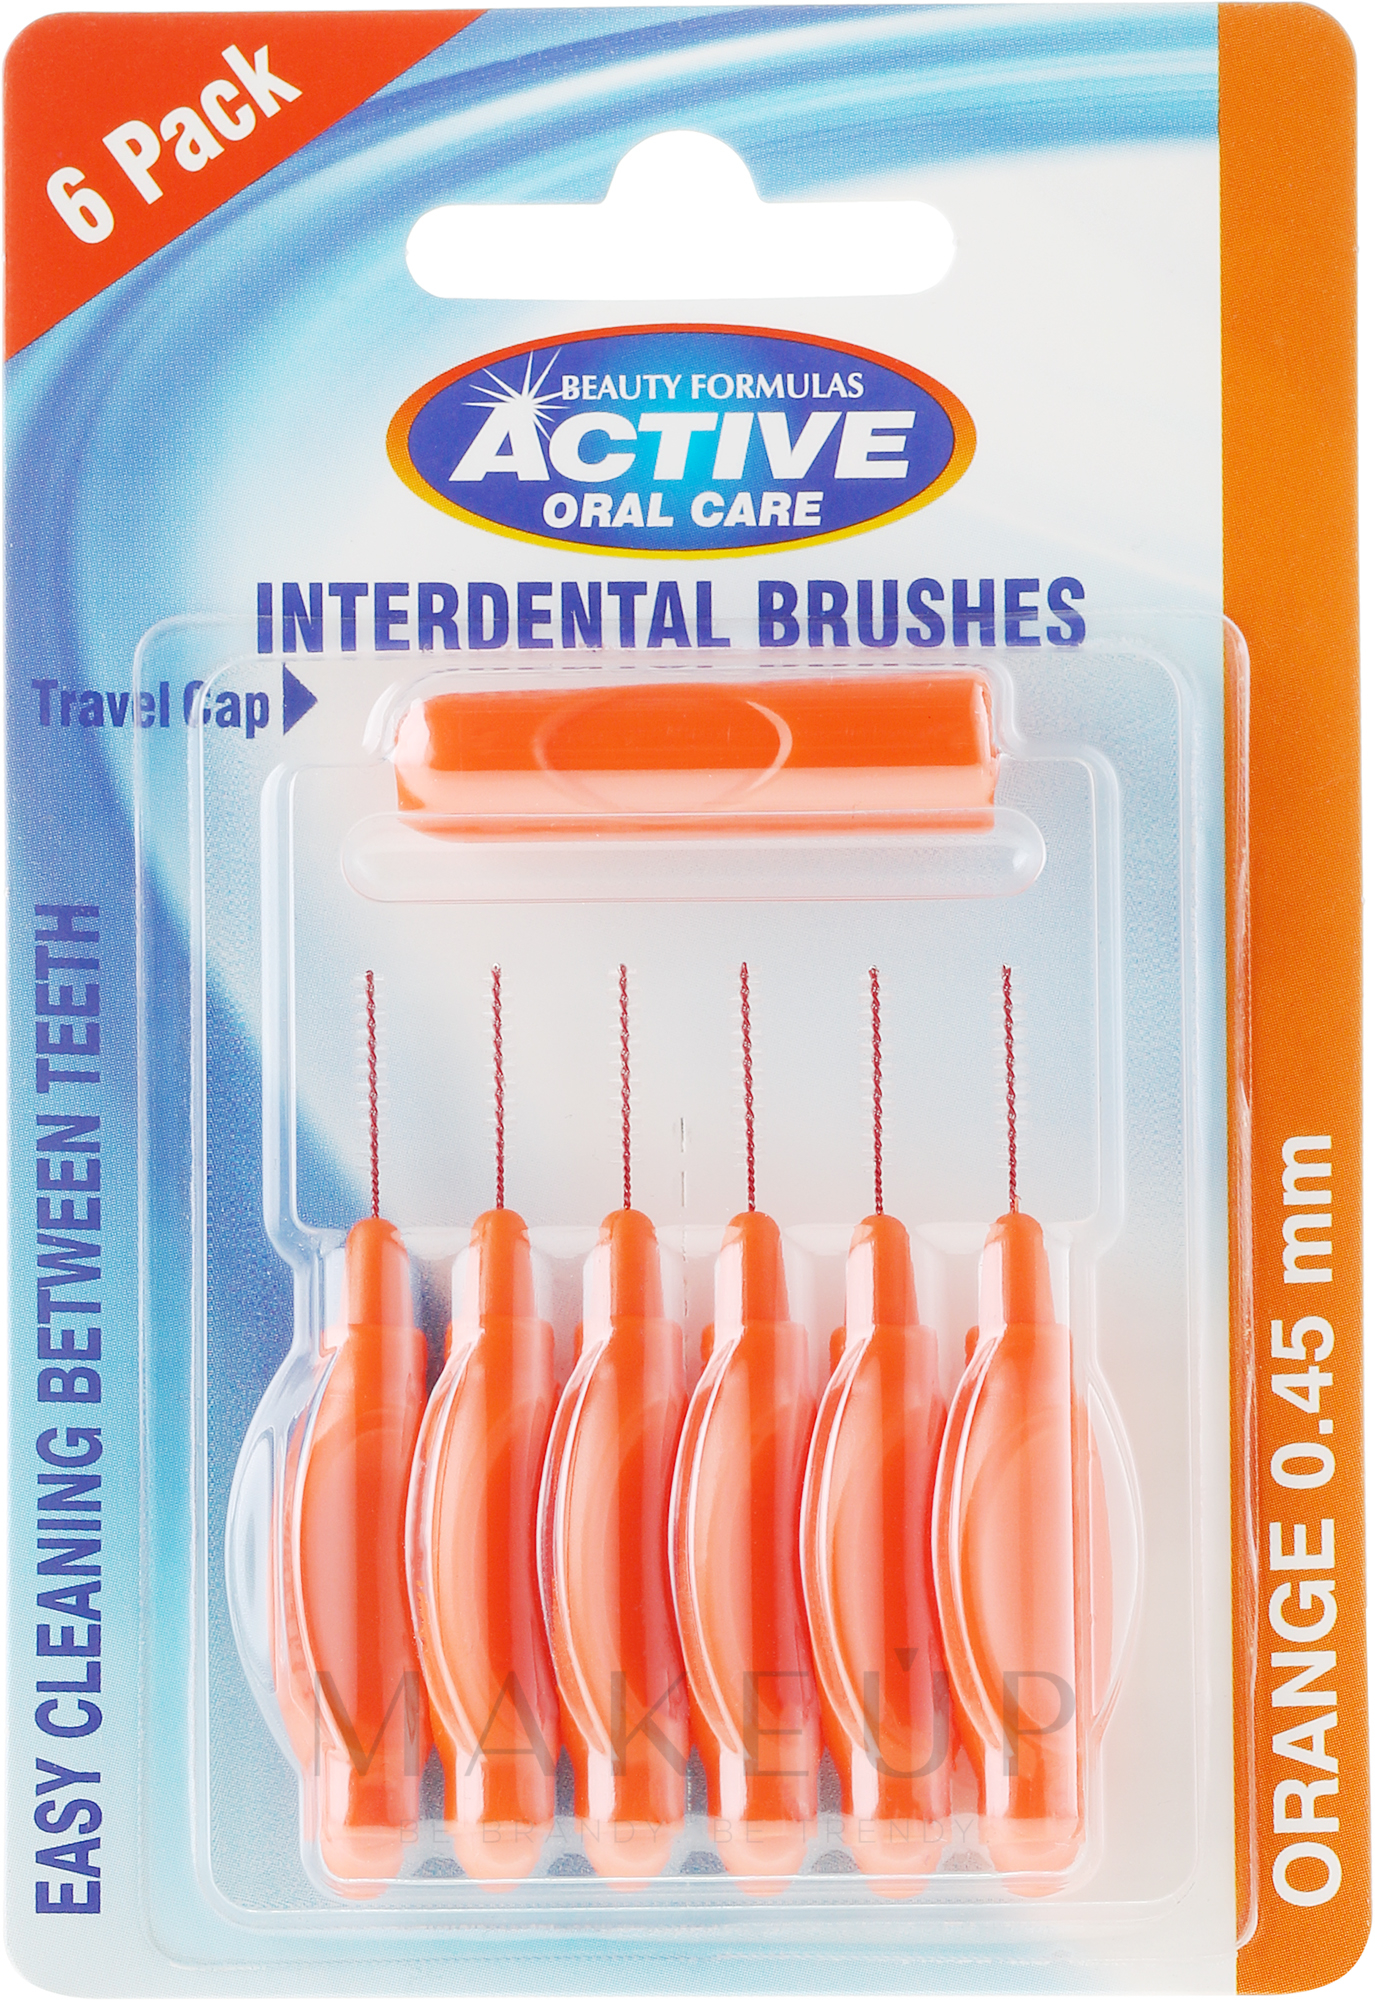 Interdentalzahnbürsten 0,45 mm orange 6 St. - Beauty Formulas Active Oral Care Interdental Brushes Orange — Foto 6 St.